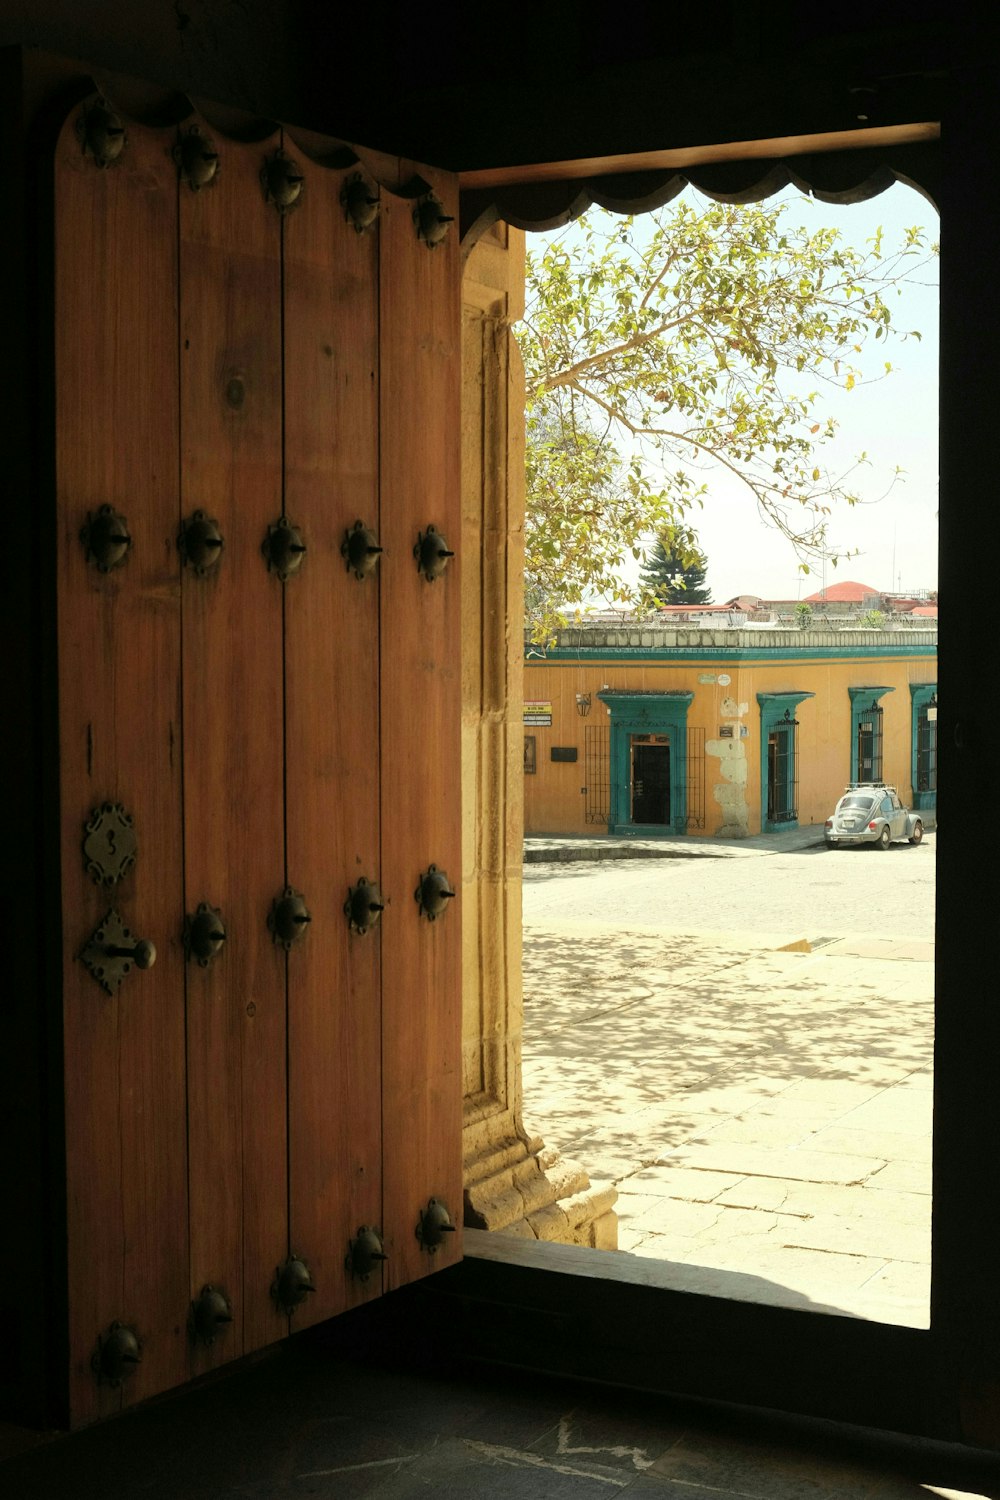 a wooden door is open to a building